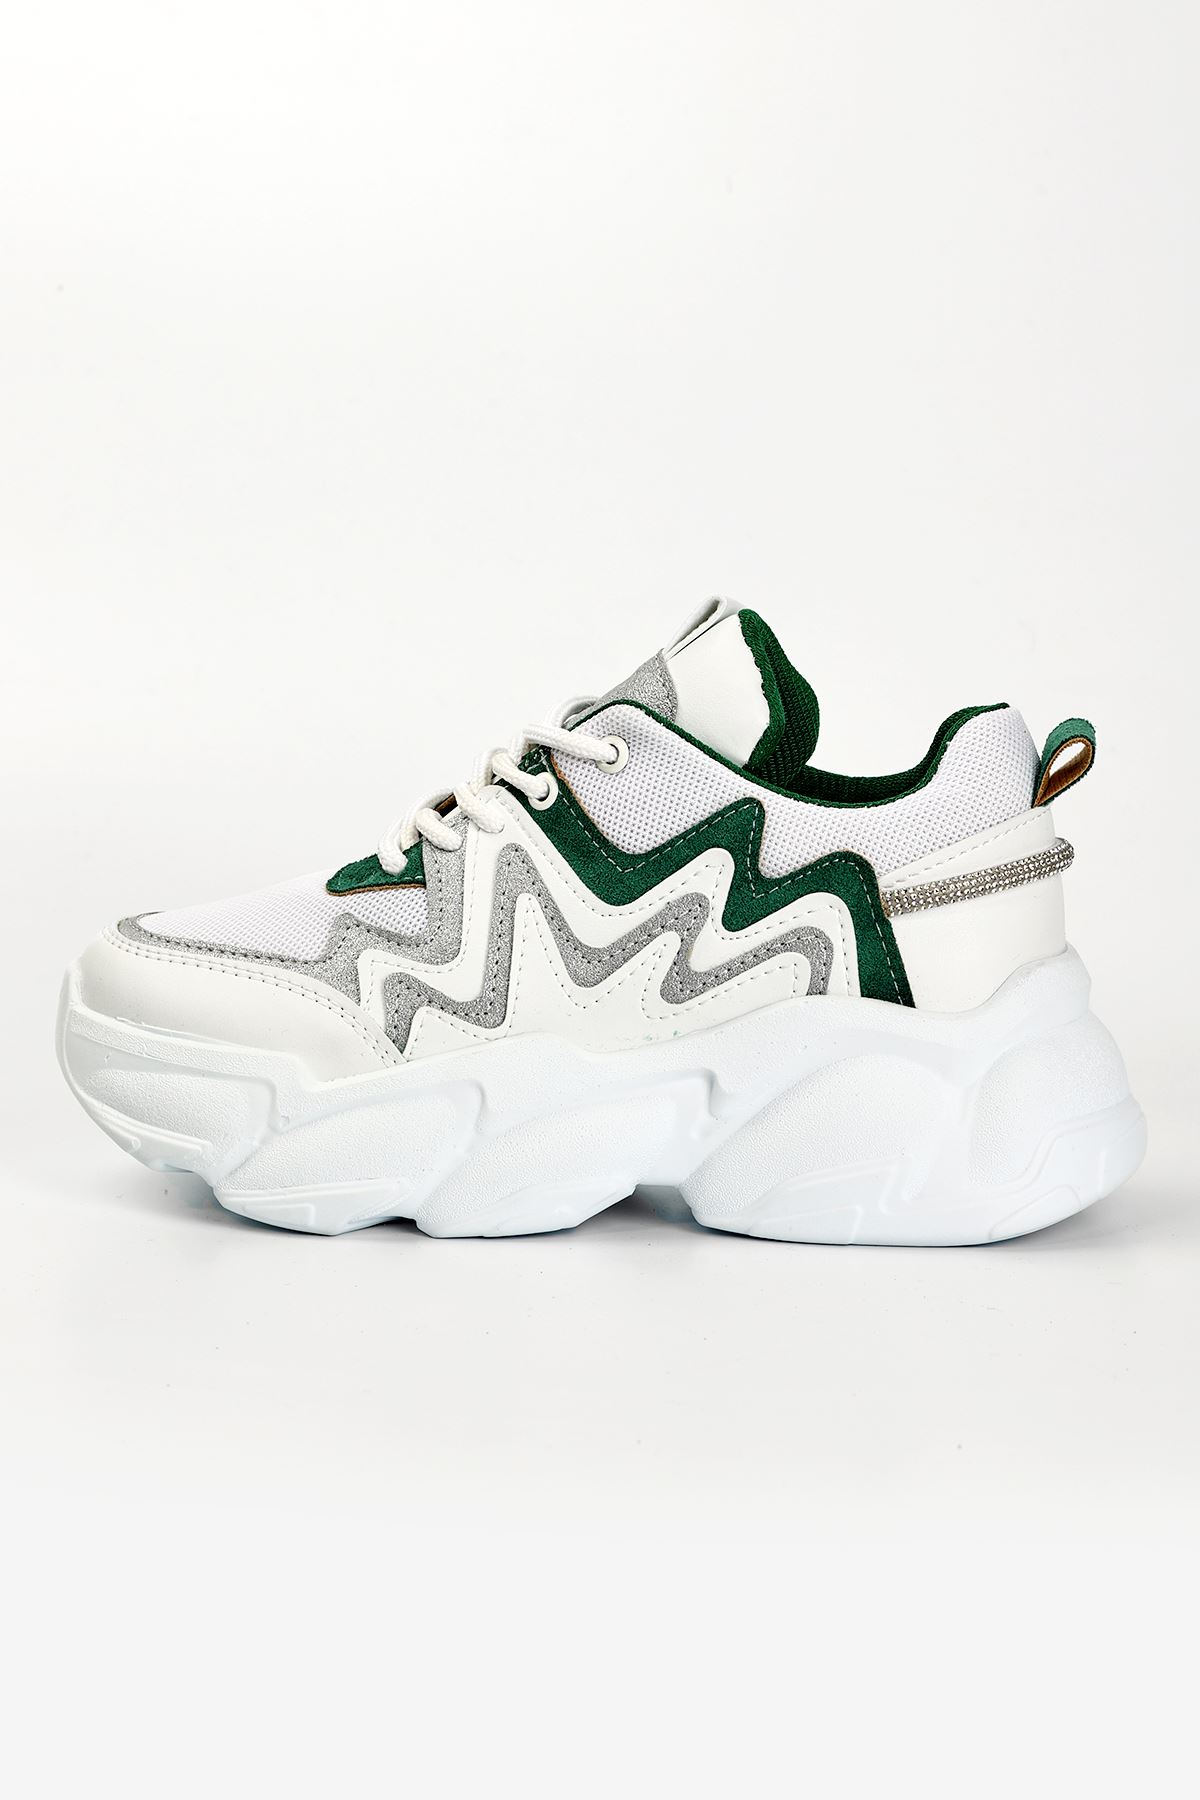 Osila Yeşil Parçalı Bağcık Detaylı Beyaz Kadın Spor Ayakkabı